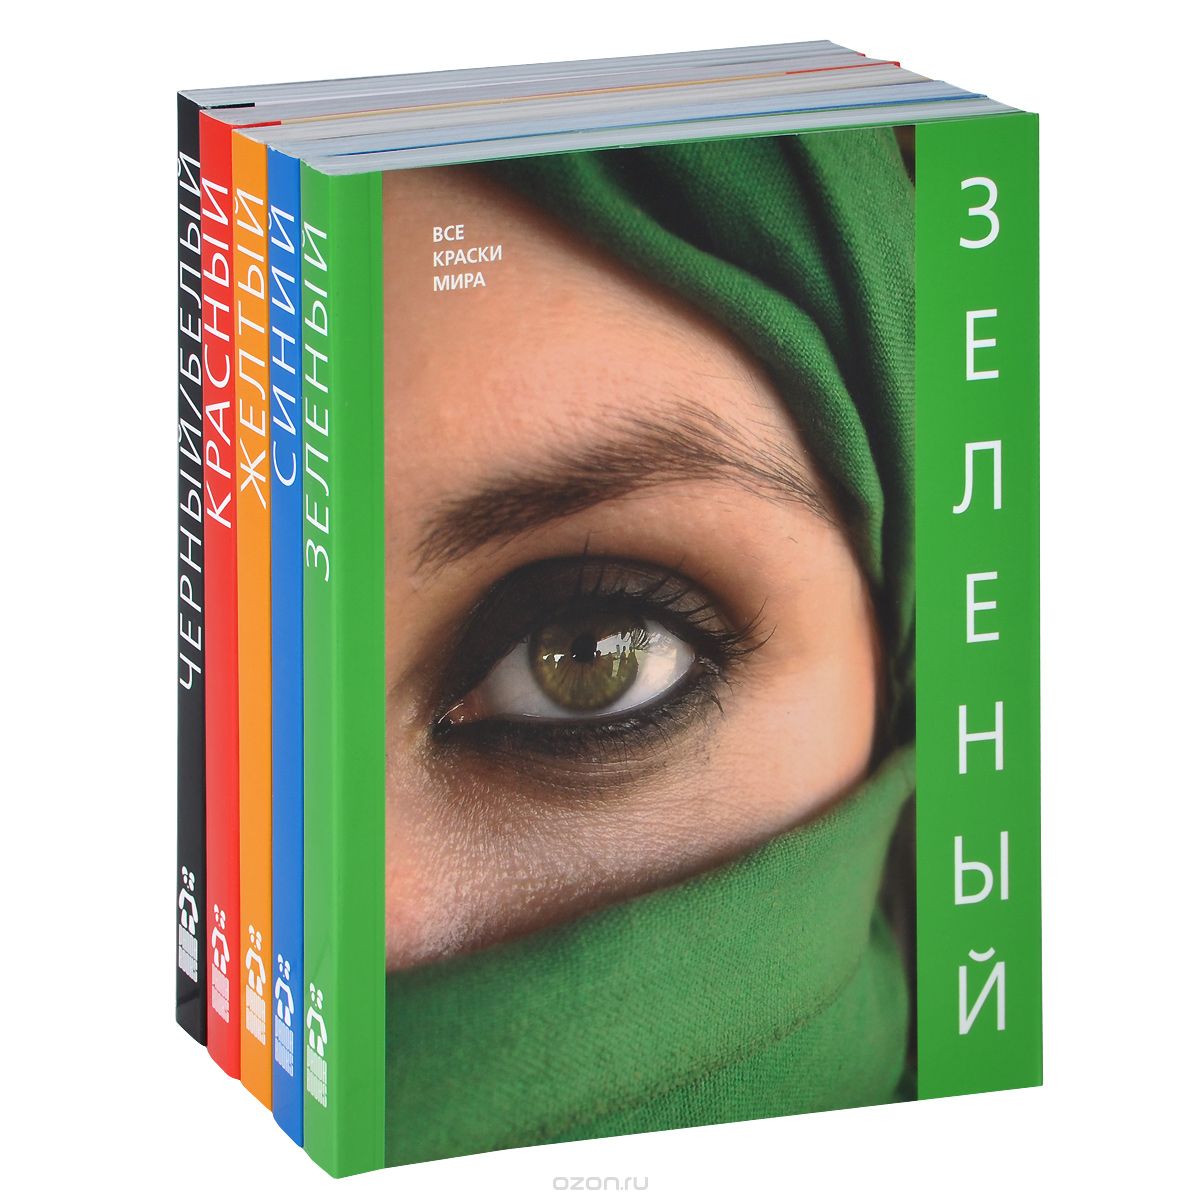 Скачать книгу "Все краски мира (комплект из 5 книг), Наталья Матвеева"